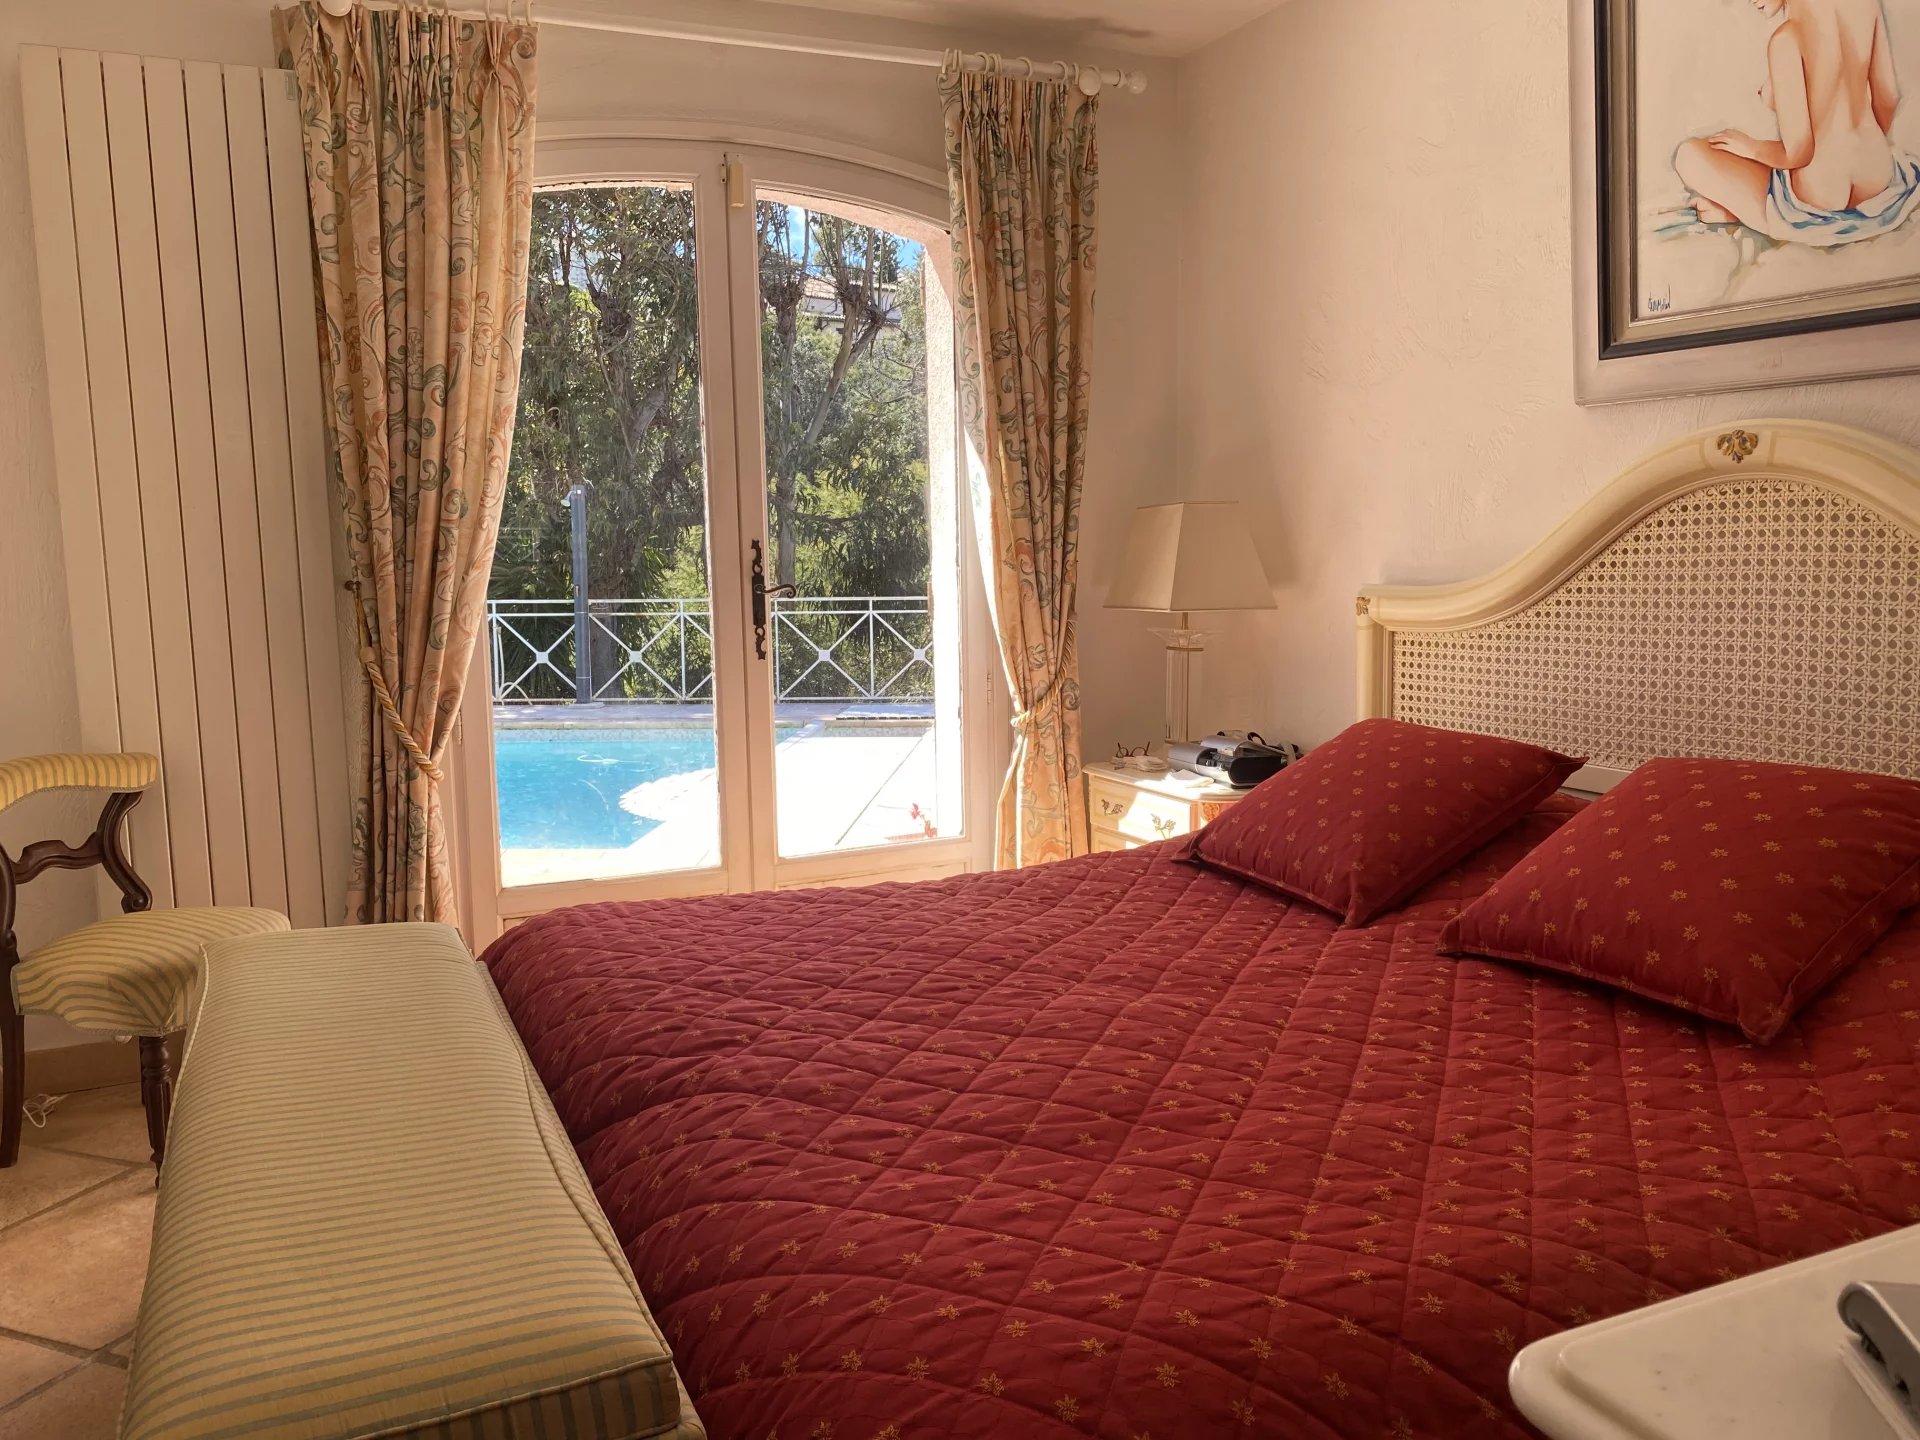 Villa mit Swimmingpool in der Nähe von Cannes